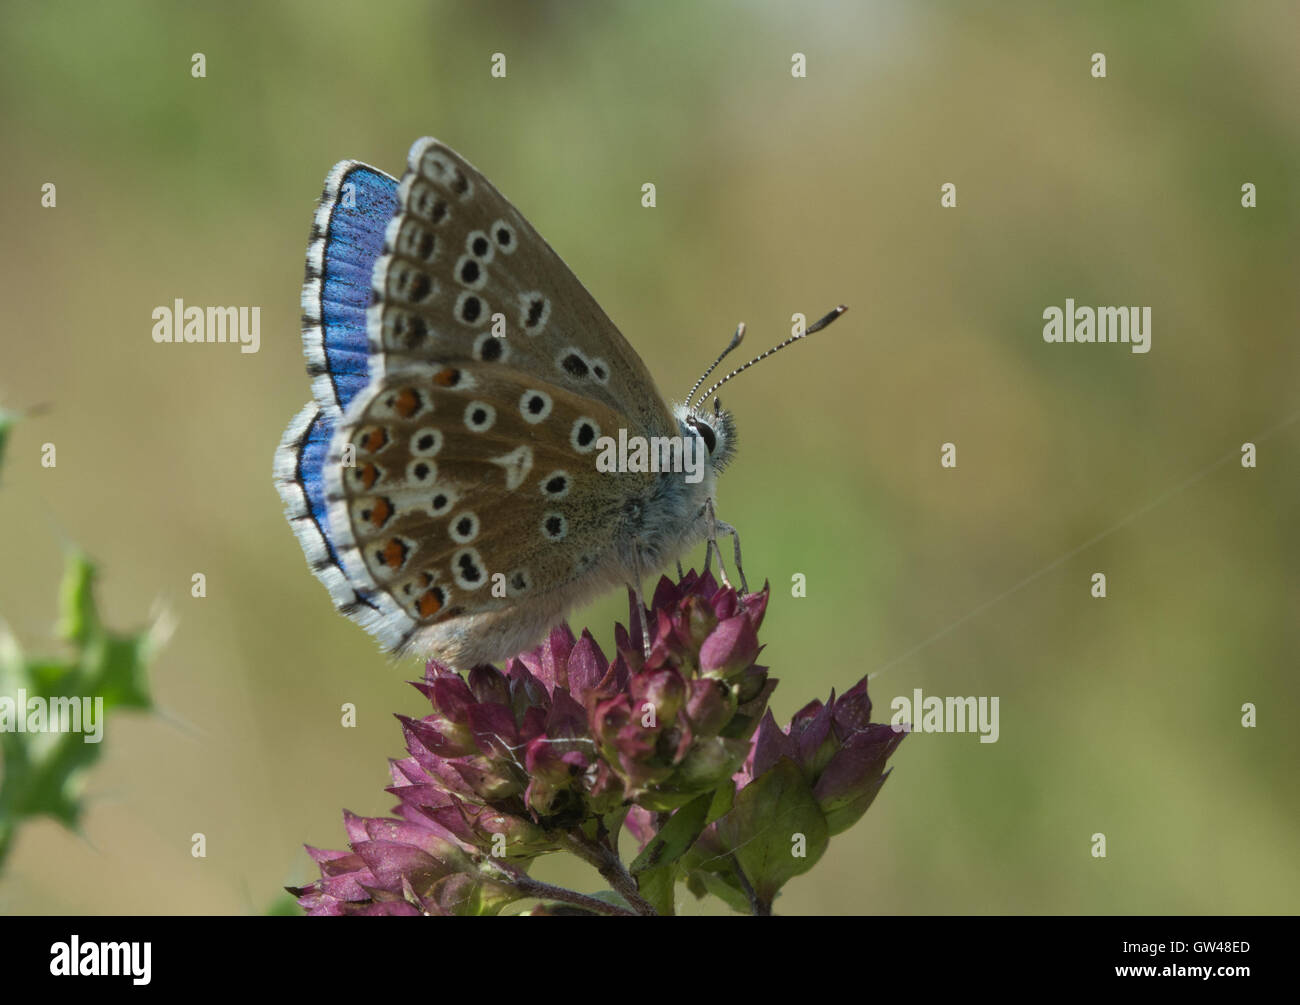 Adone maschio blue butterfly (Polyommatus bellargus) sui fiori selvatici al vecchio Winchester Hill in Hampshire, Inghilterra Foto Stock